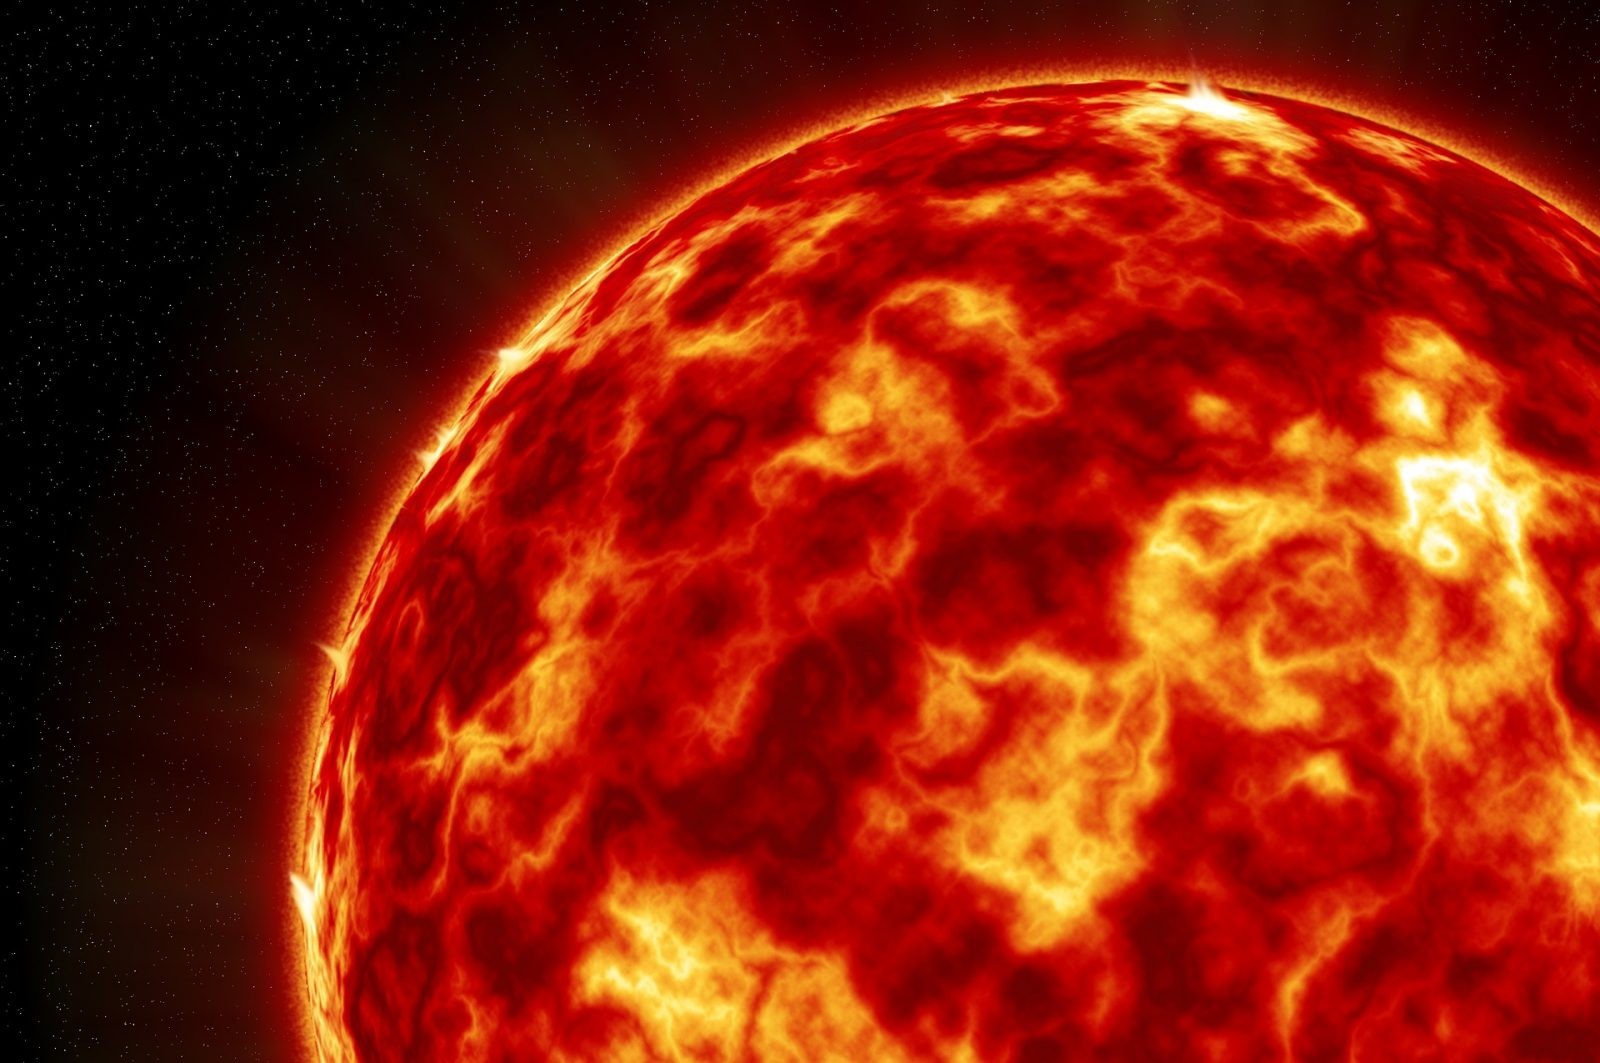 Tak wygląda Słońce z bliska! Pokazano pierwsze w historii zdjęcia naszej gwiazdy w niespotykanej dotąd jakości